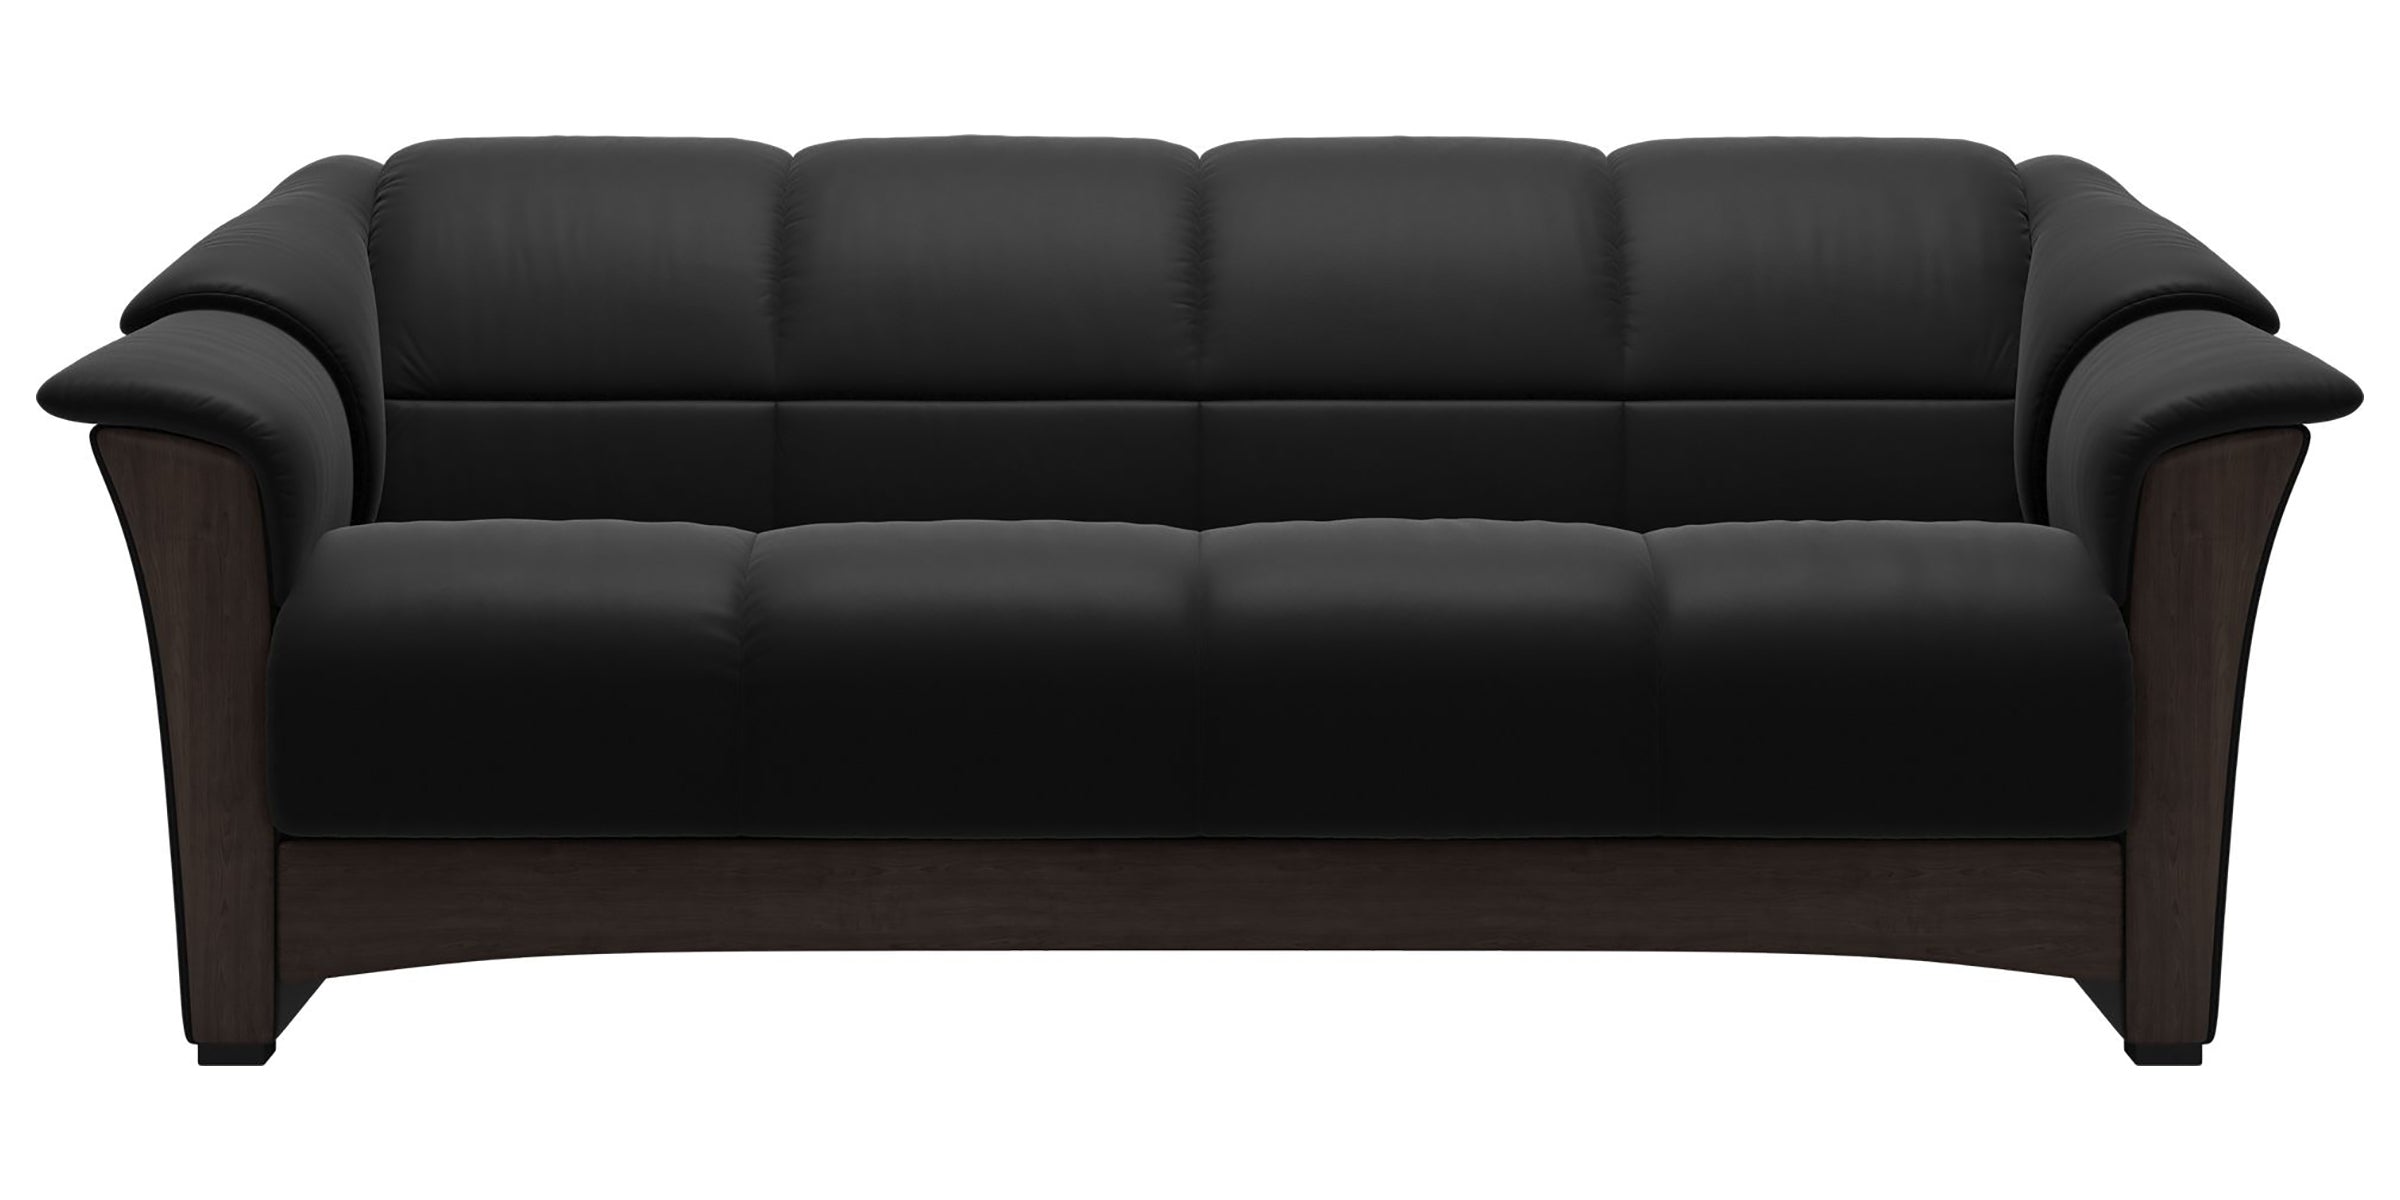 Paloma Leather Black and Wenge Base | Stressless Oslo Sofa | Valley Ridge Furniture